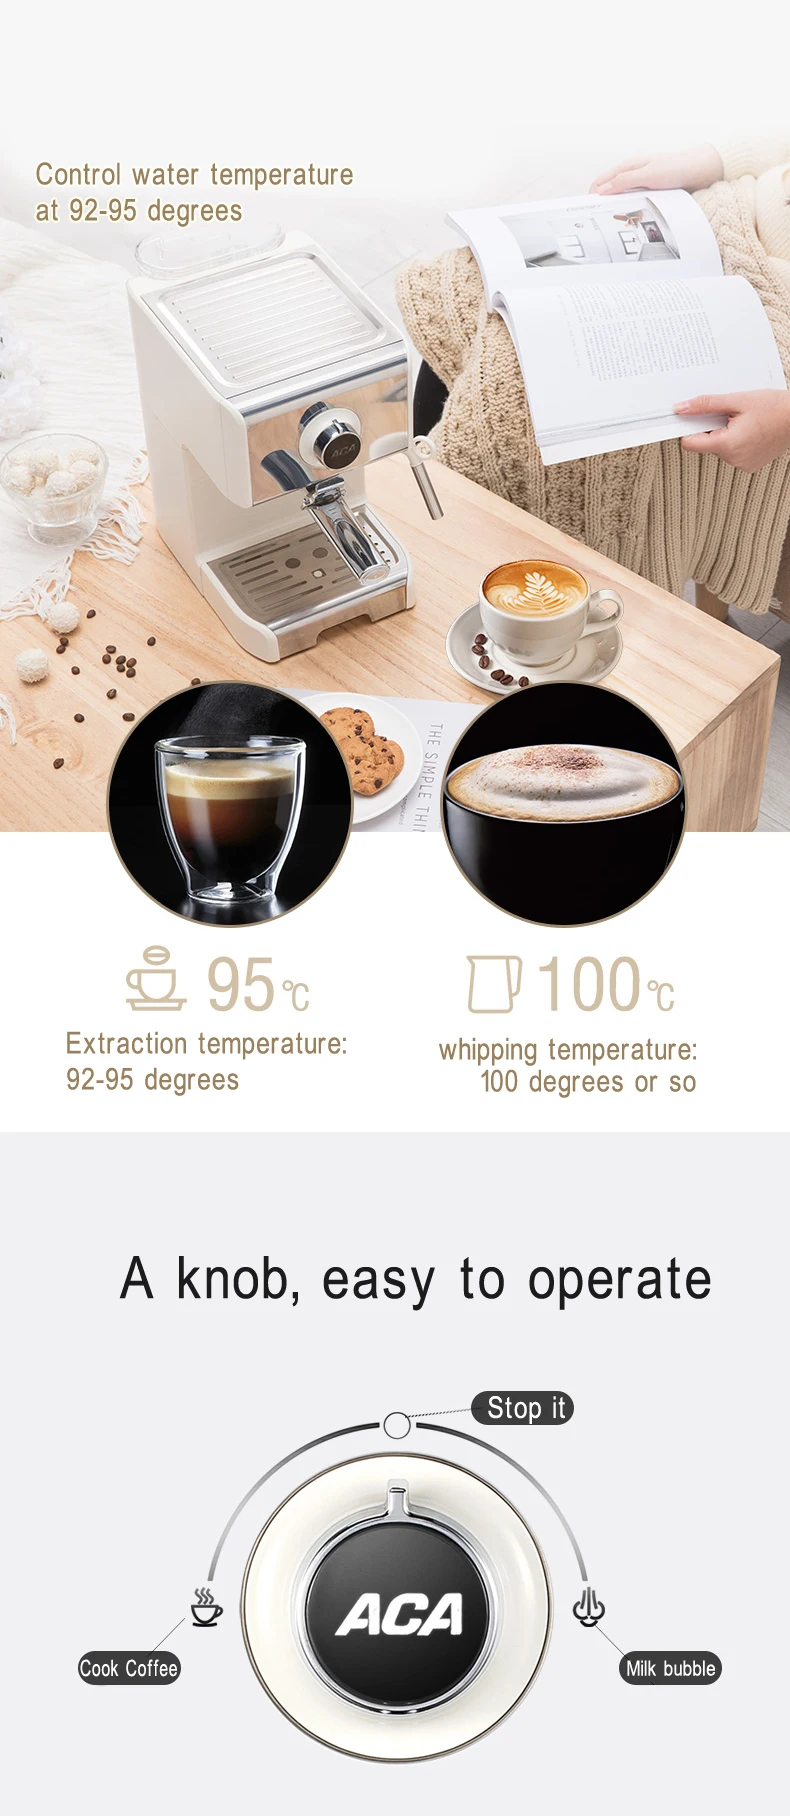 Полуавтоматическая кофемашина, накачанная кофе для домашнего и коммерческого использования, небольшая Паровая молочная пена, одна кнопка управления для быстрого нагрева